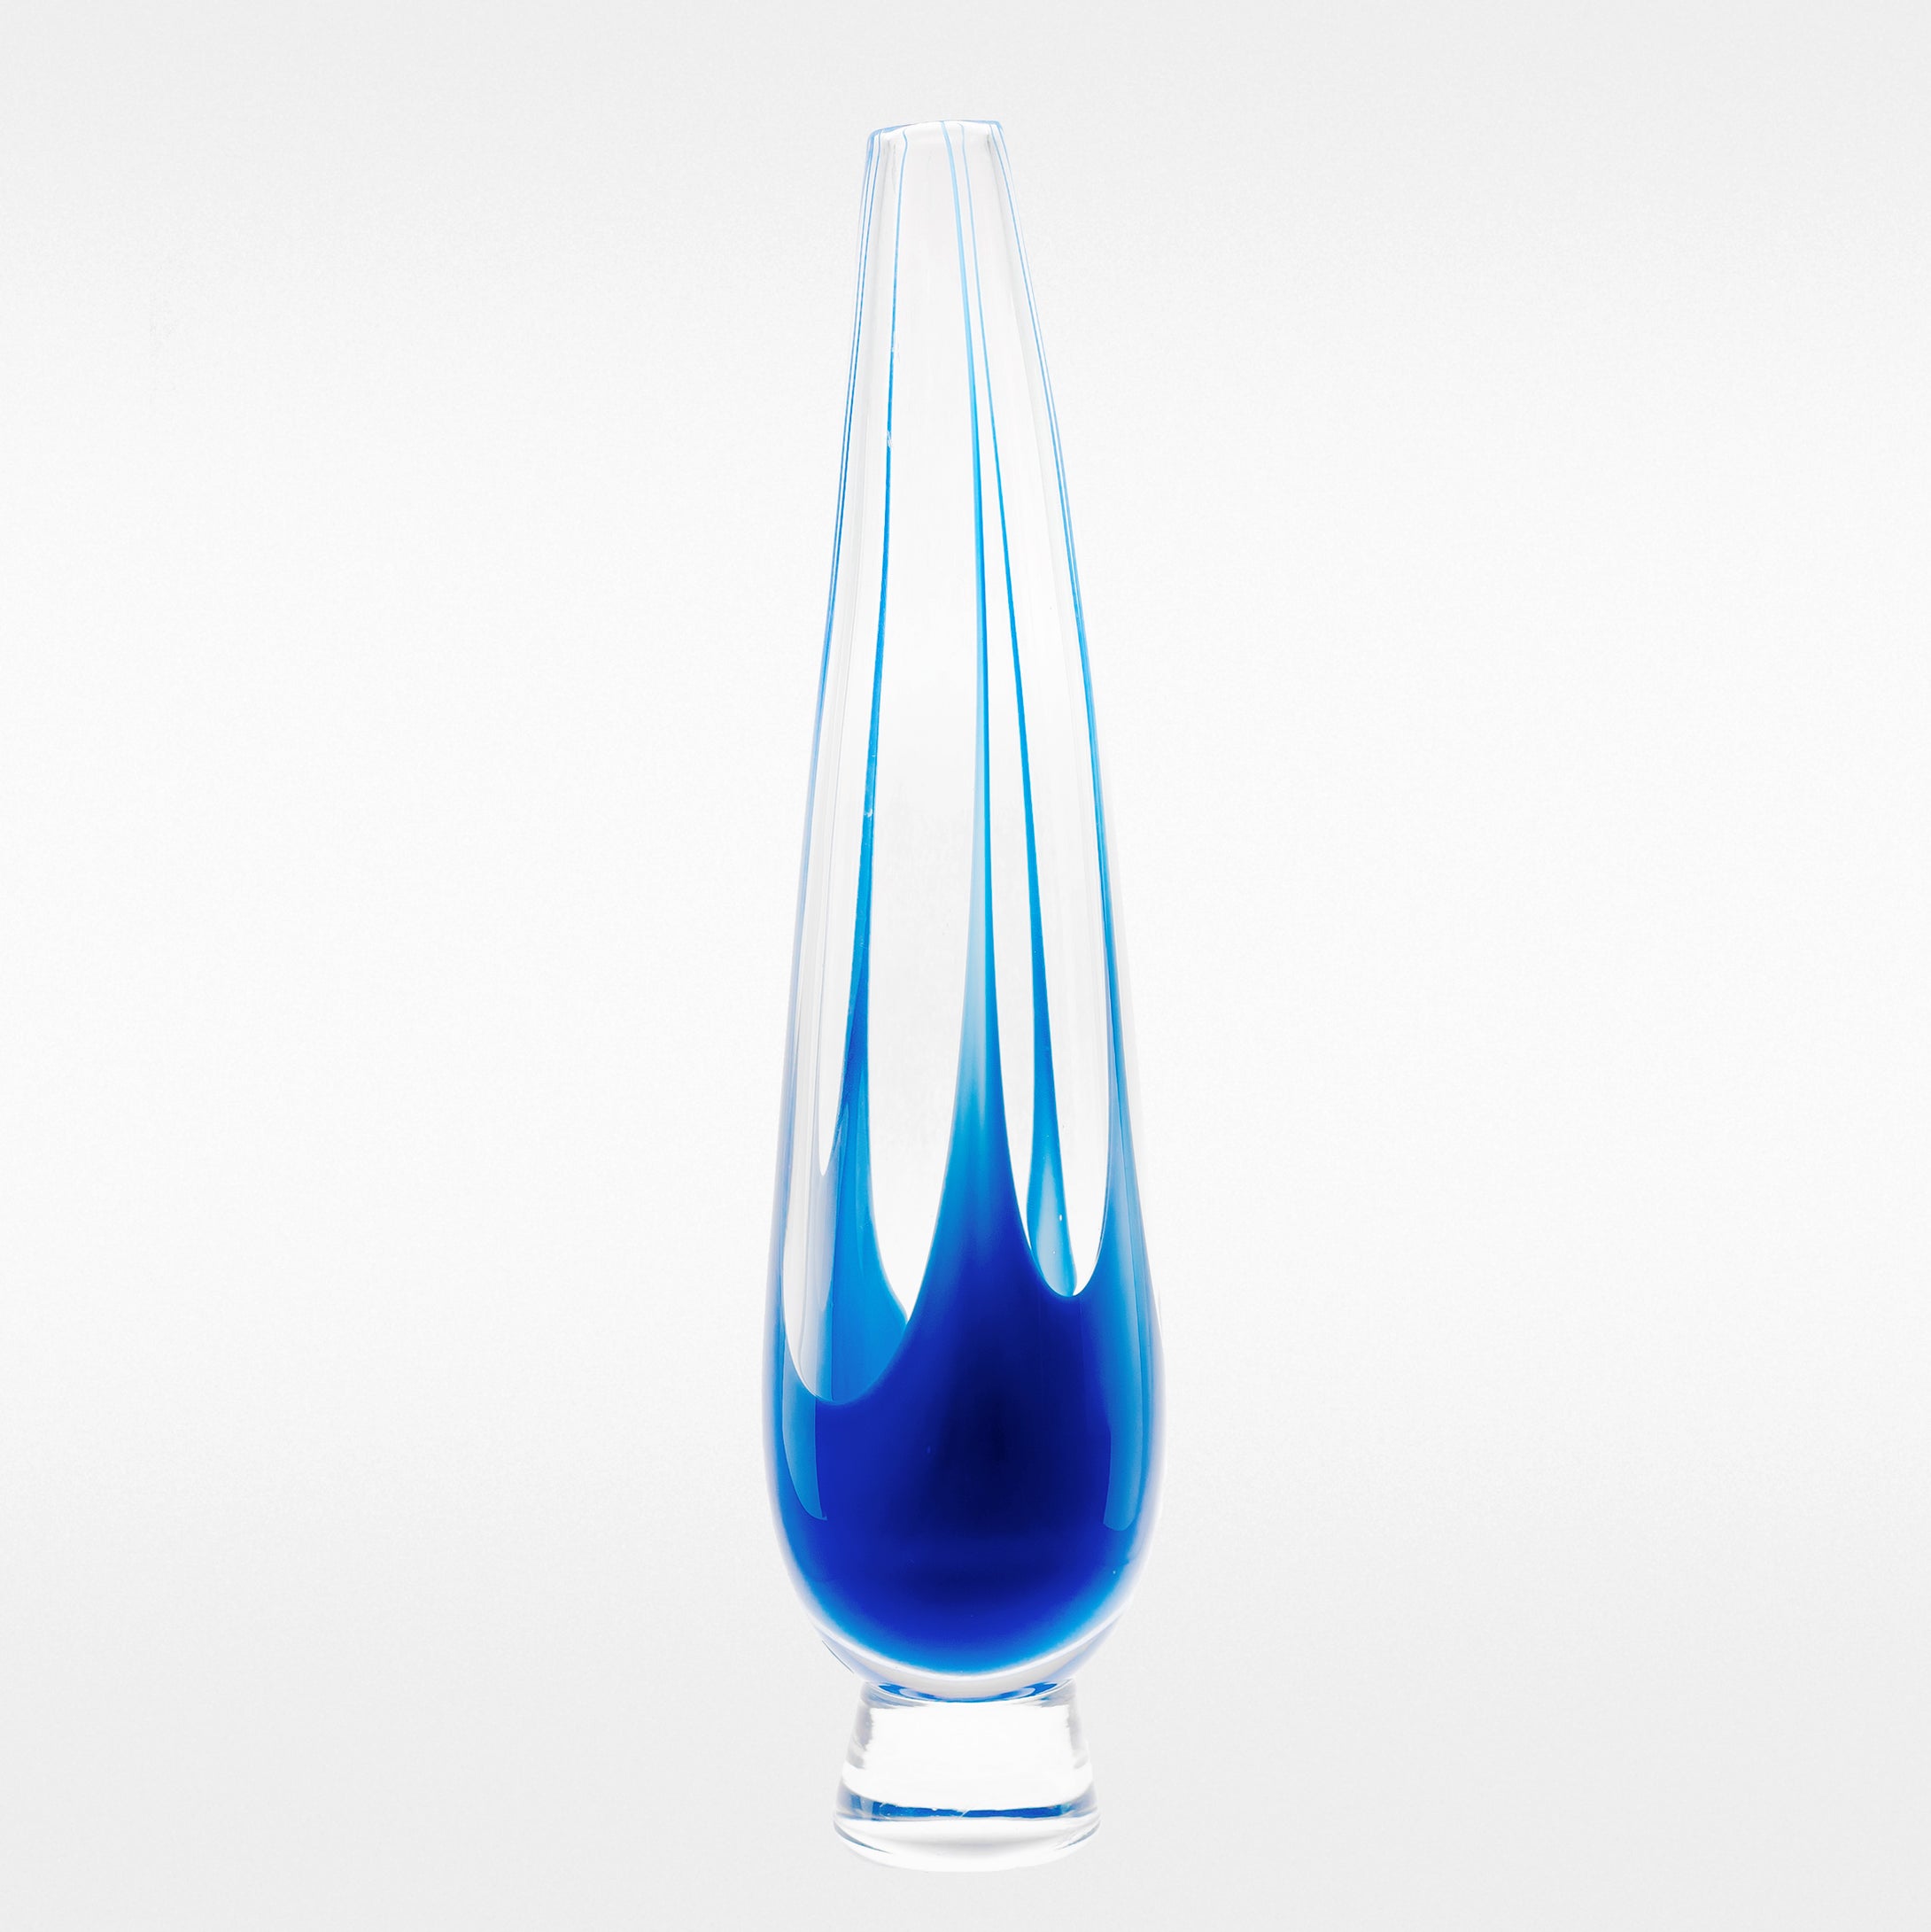 Vas från Kosta i klarglas med blått underfång. Signerad LH 1194 LINDSTRAND KOSTA. 35,5cm hög. Kosta vase with blue underlay. H: 35,5cm/14″. Signed LH 1194 LINDSTRAND KOSTA